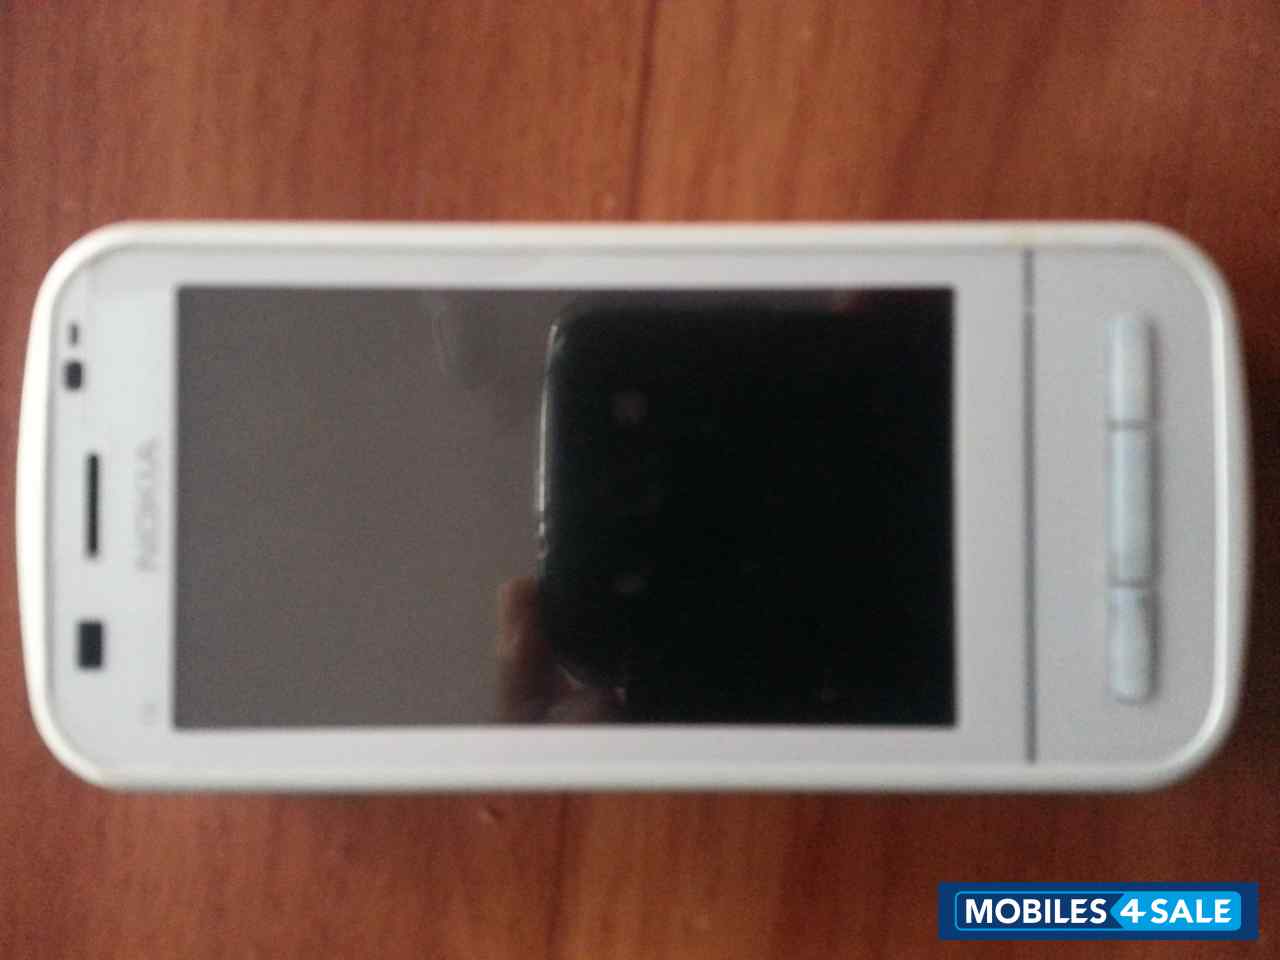 White Nokia C6